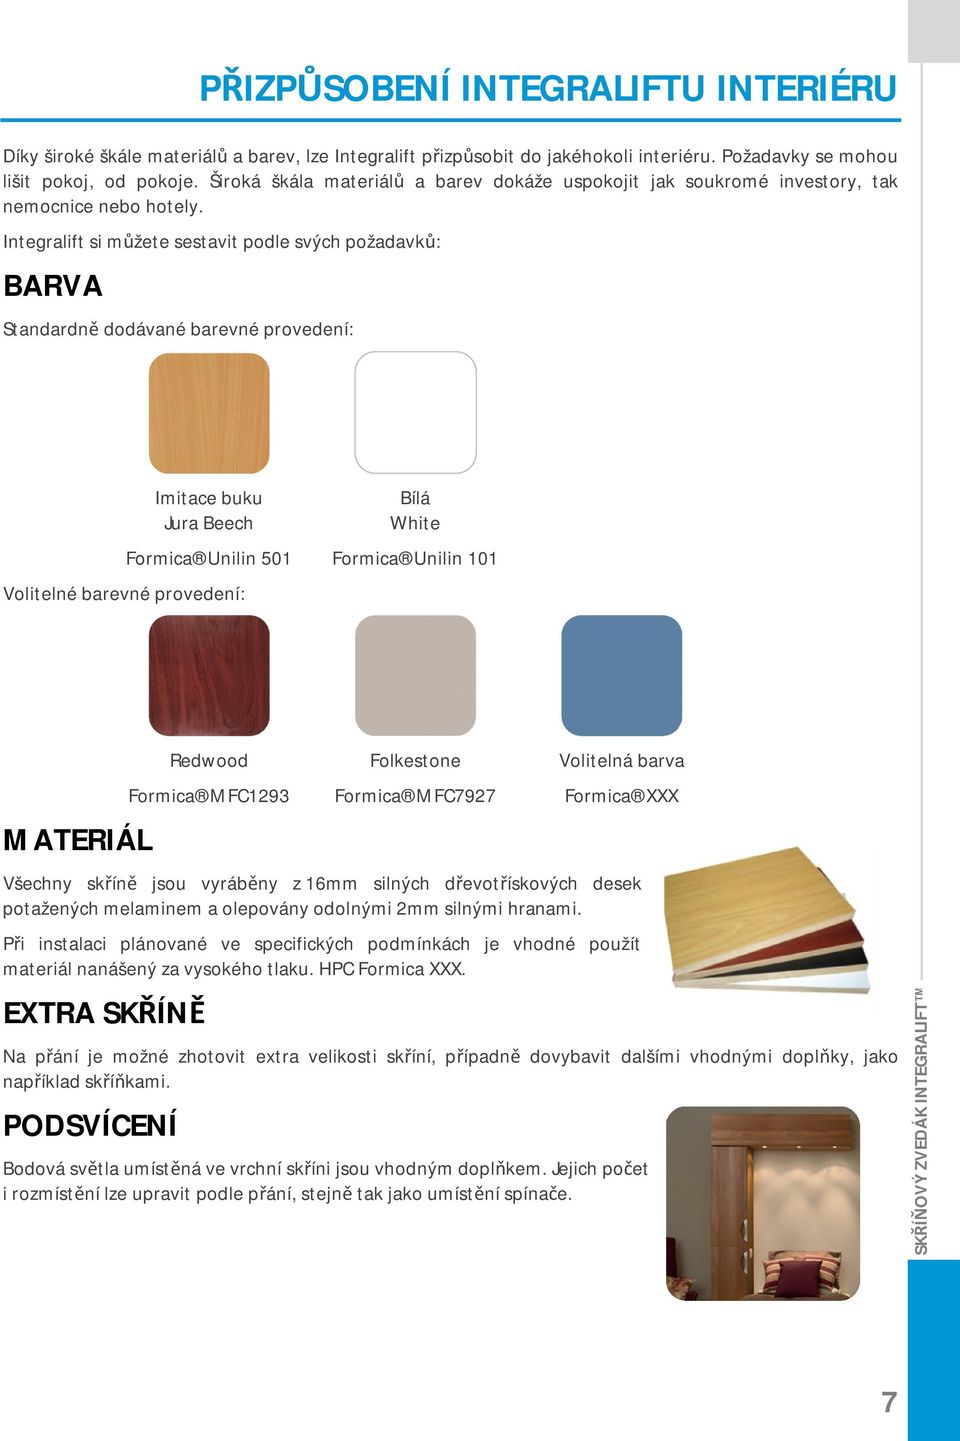 Integralift si můžete sestavit podle svých požadavků: BARVA Standardně dodávané barevné provedení: Imitace buku Bílá Jura Beech White Formica Unilin 501 Formica Unilin 101 Volitelné barevné